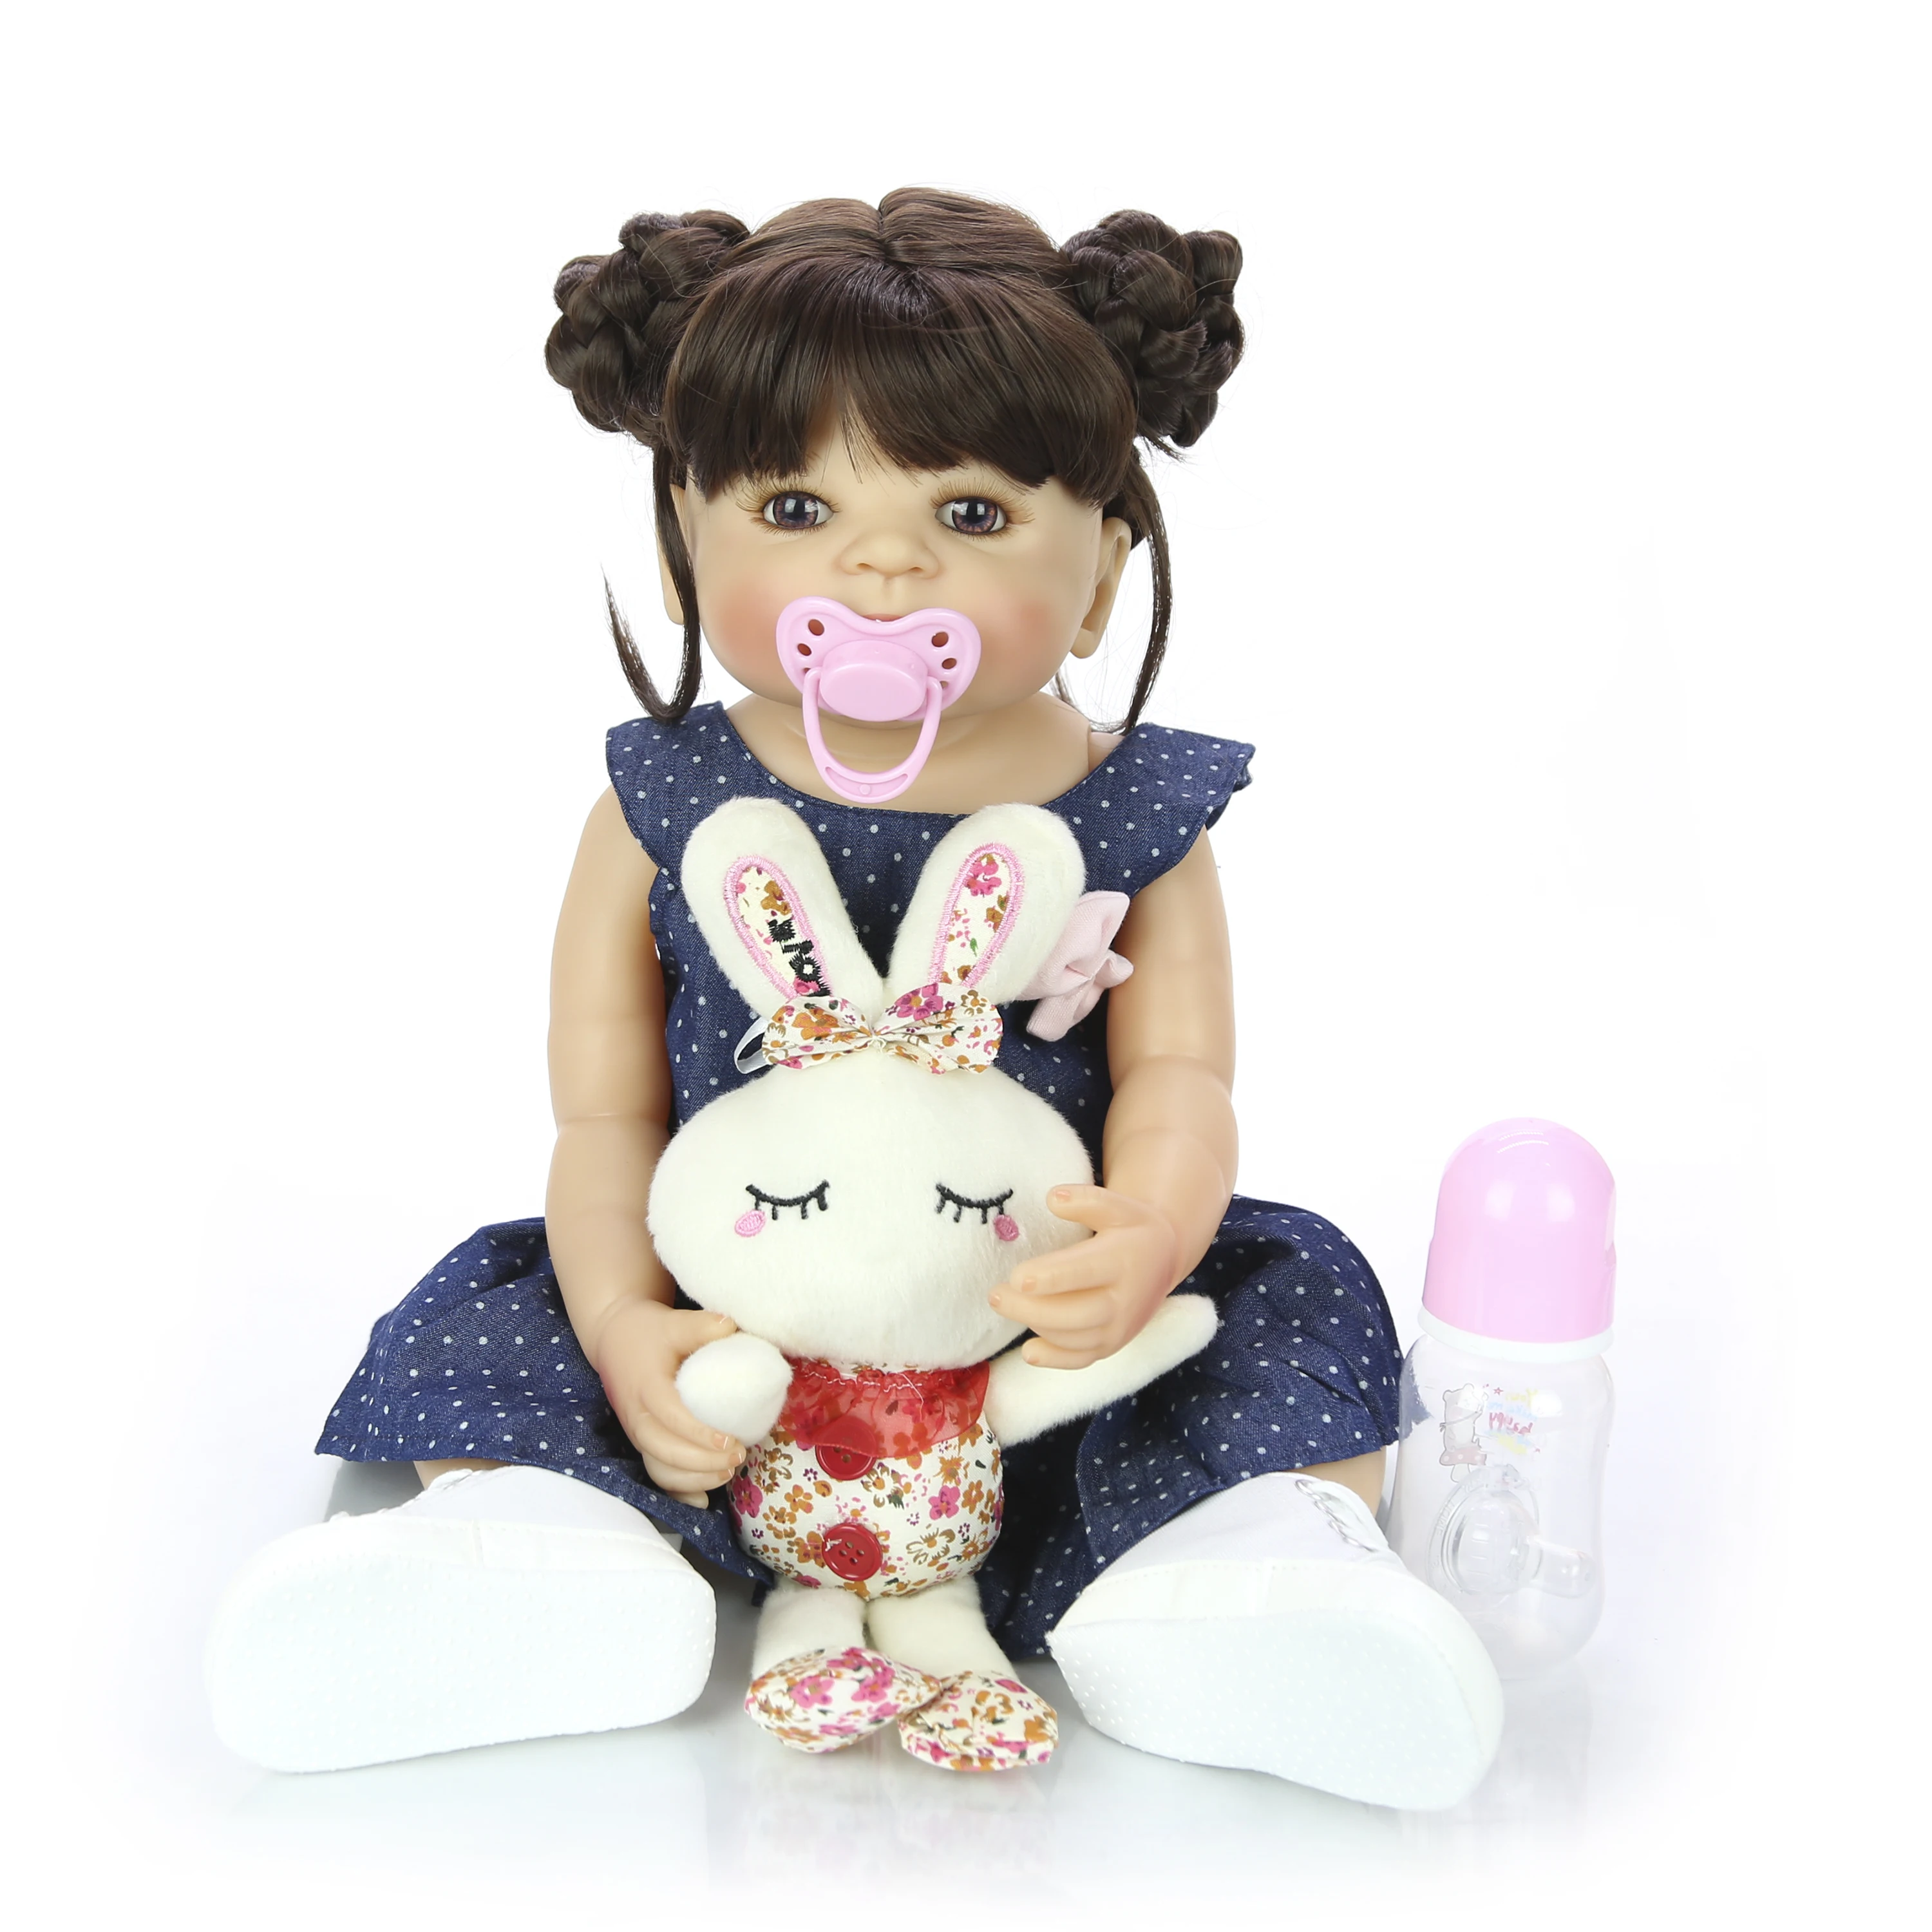 2" реалистичные Reborn Boneca 55 см девушка полный тело силиконовые виниловые куклы Reborn младенцев DIY Прическа для детей подарки на день рождения